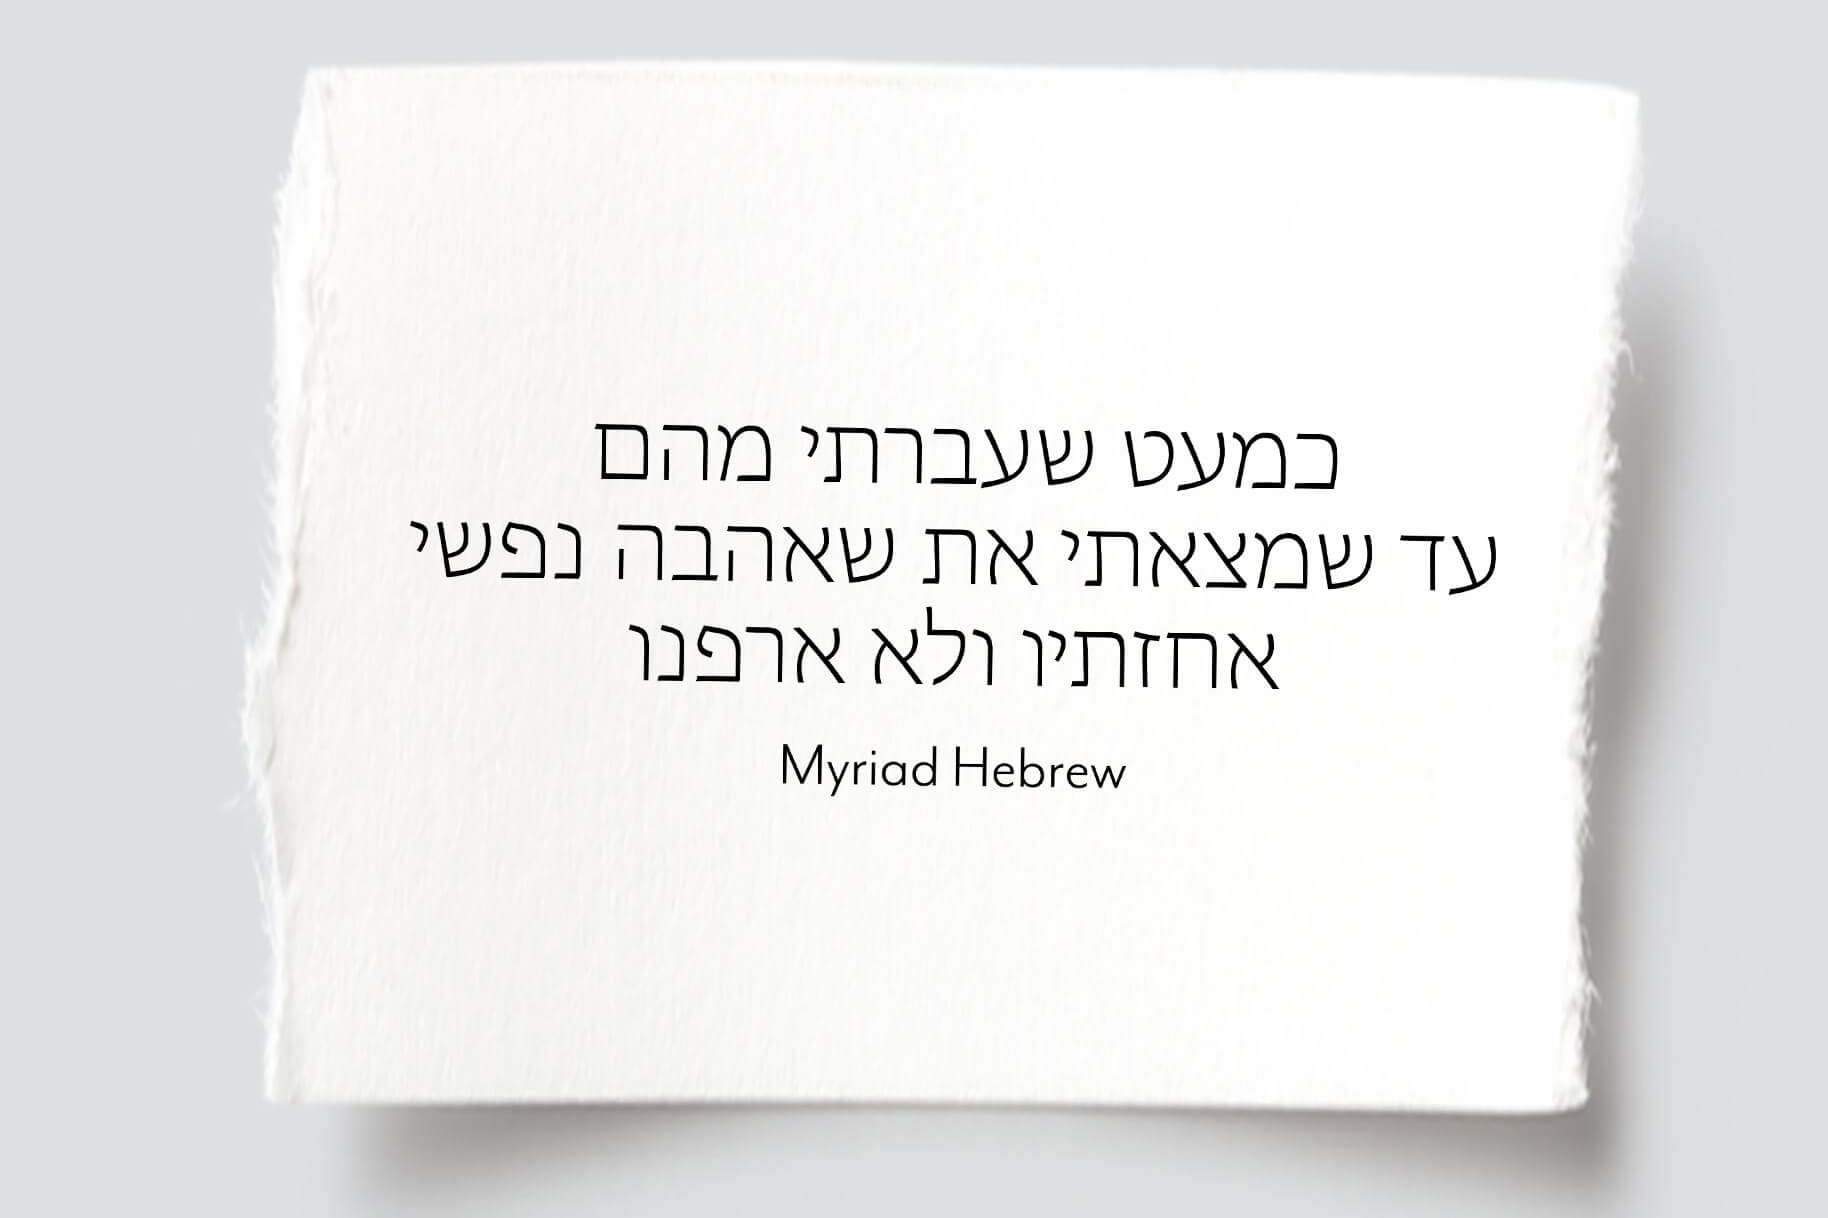 myriad hebrew.jpg